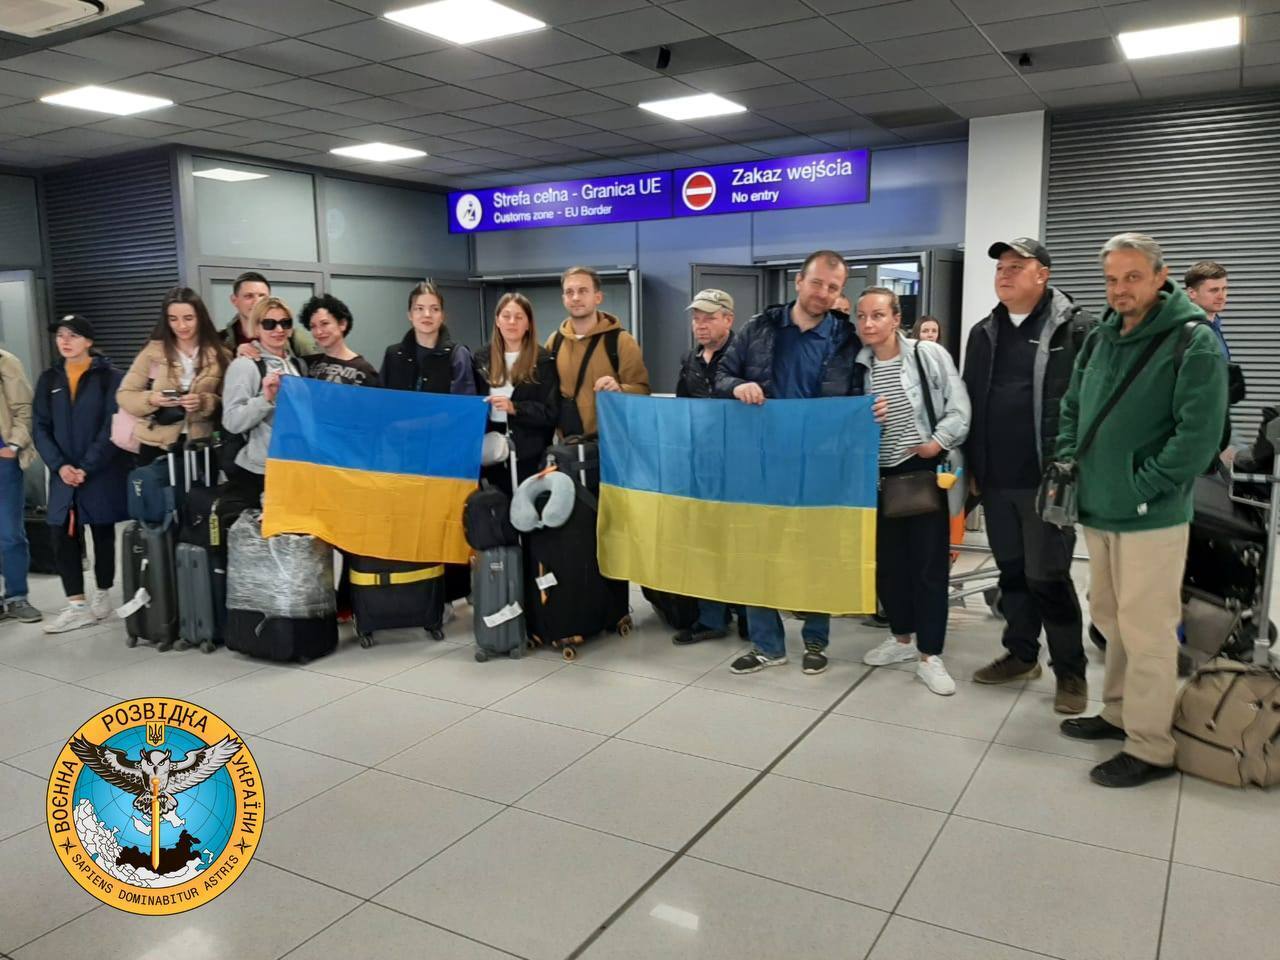 Удалось вывезти три группы граждан: стали известны подробности эвакуации украинцев из Судана. Фото и видео